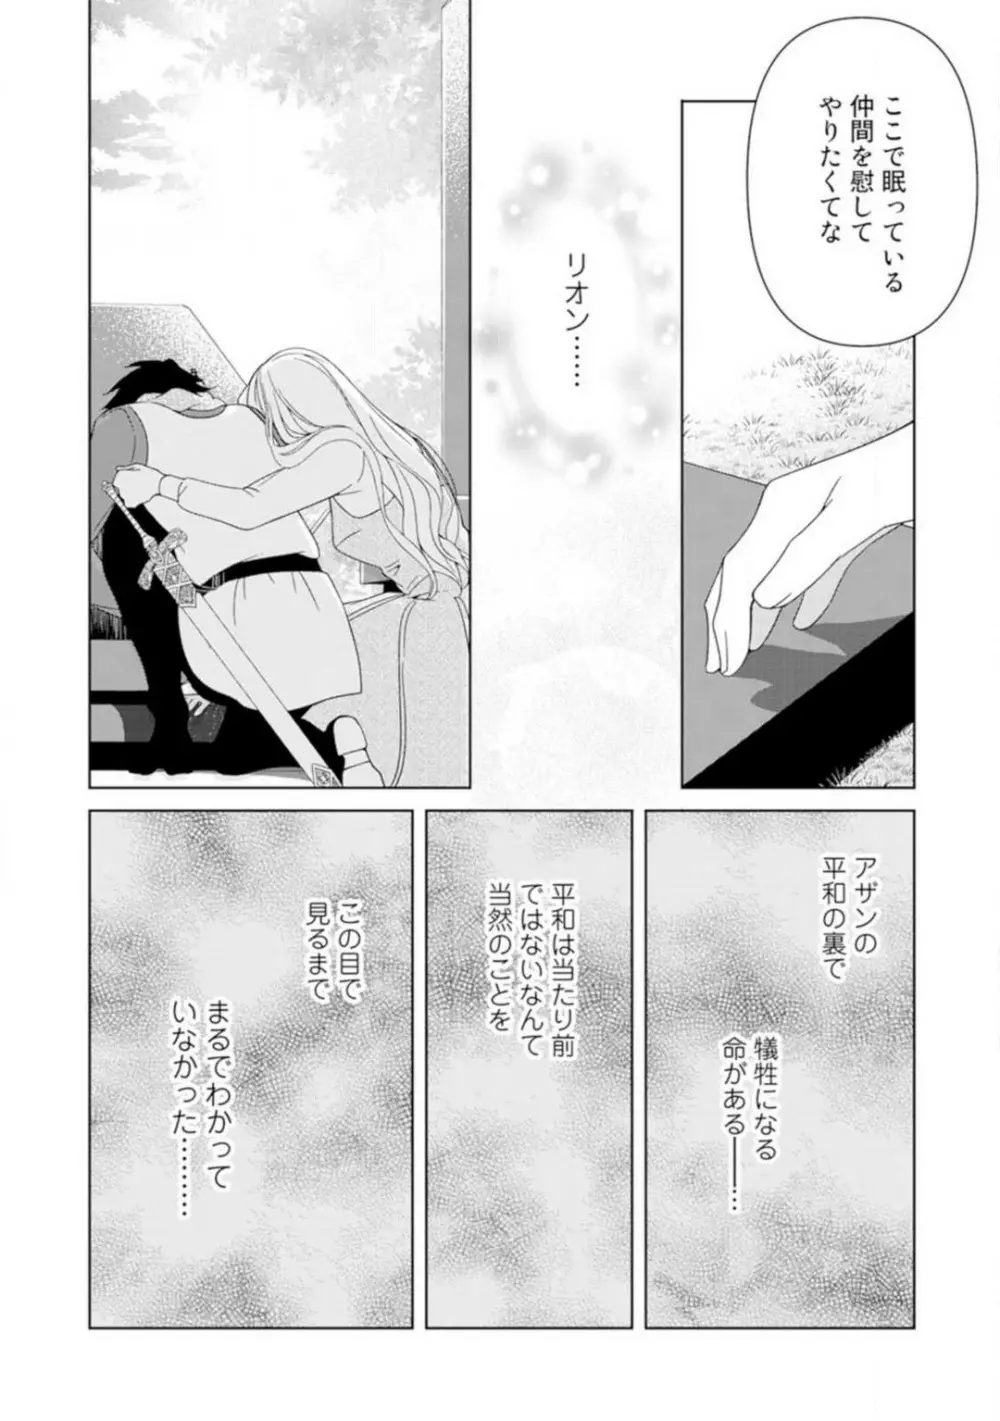 灼熱の王の淫愛〜熱い指にとかされて〜 1-6 91ページ